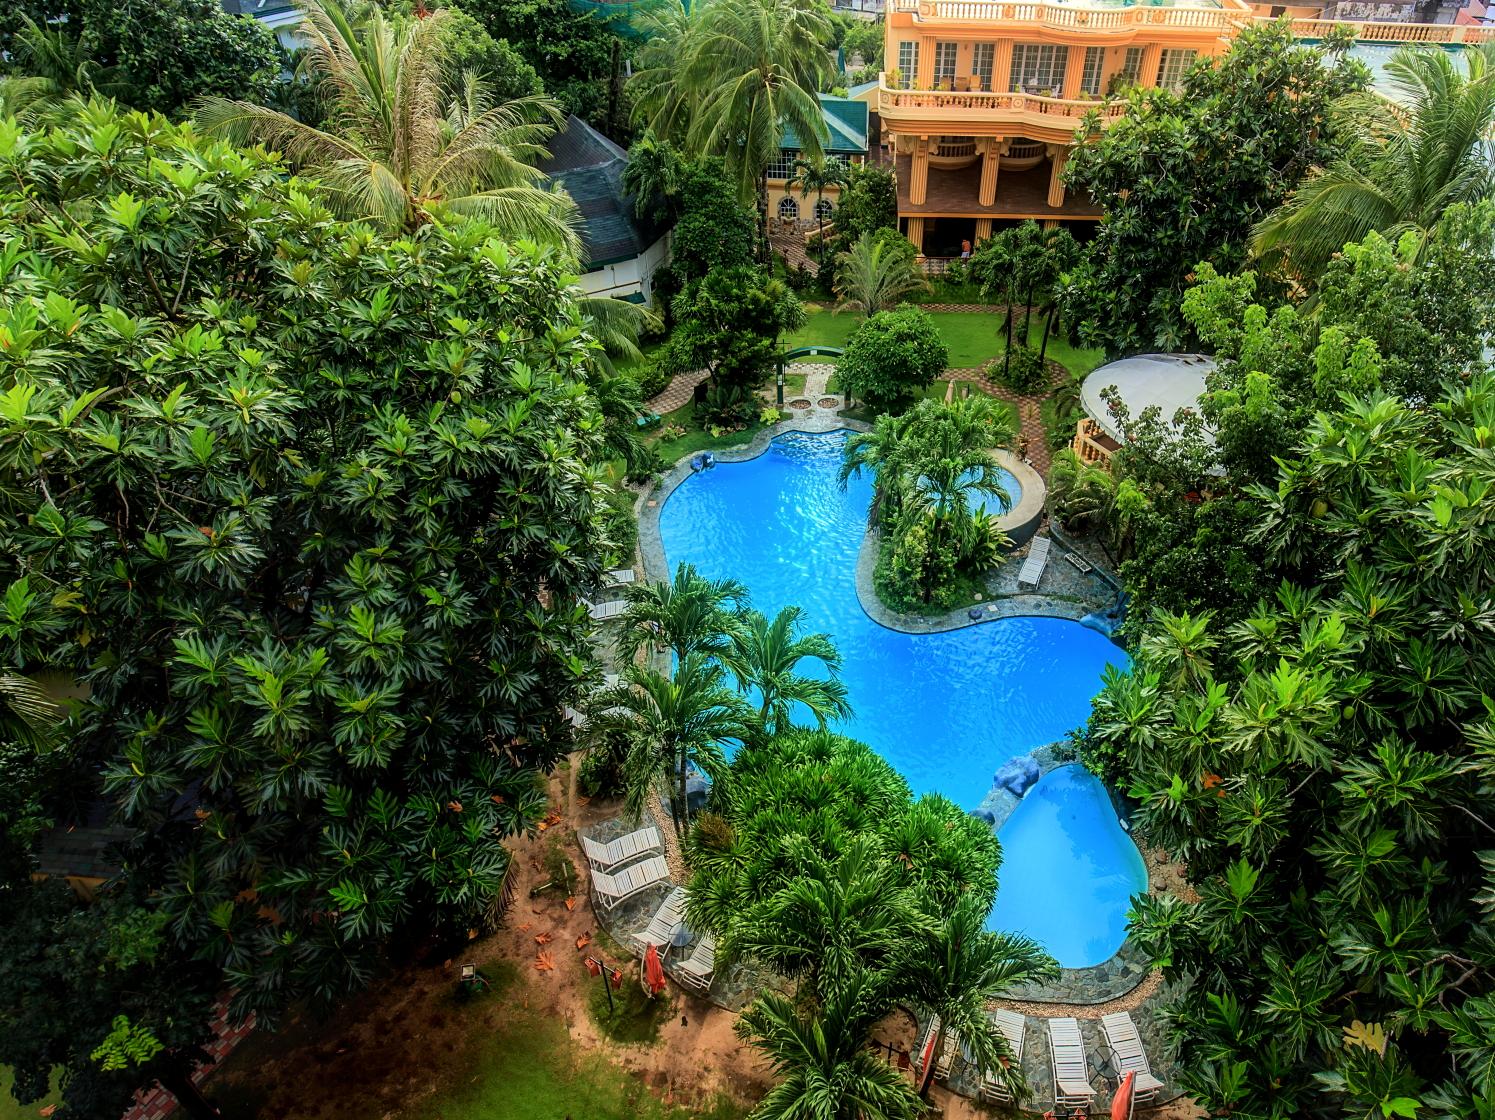 蓝色长滩岛酒店 (长滩岛) - Isla Azul Boracay - 酒店预订 /预定 - 5条旅客点评与比价 - Tripadvisor猫途鹰